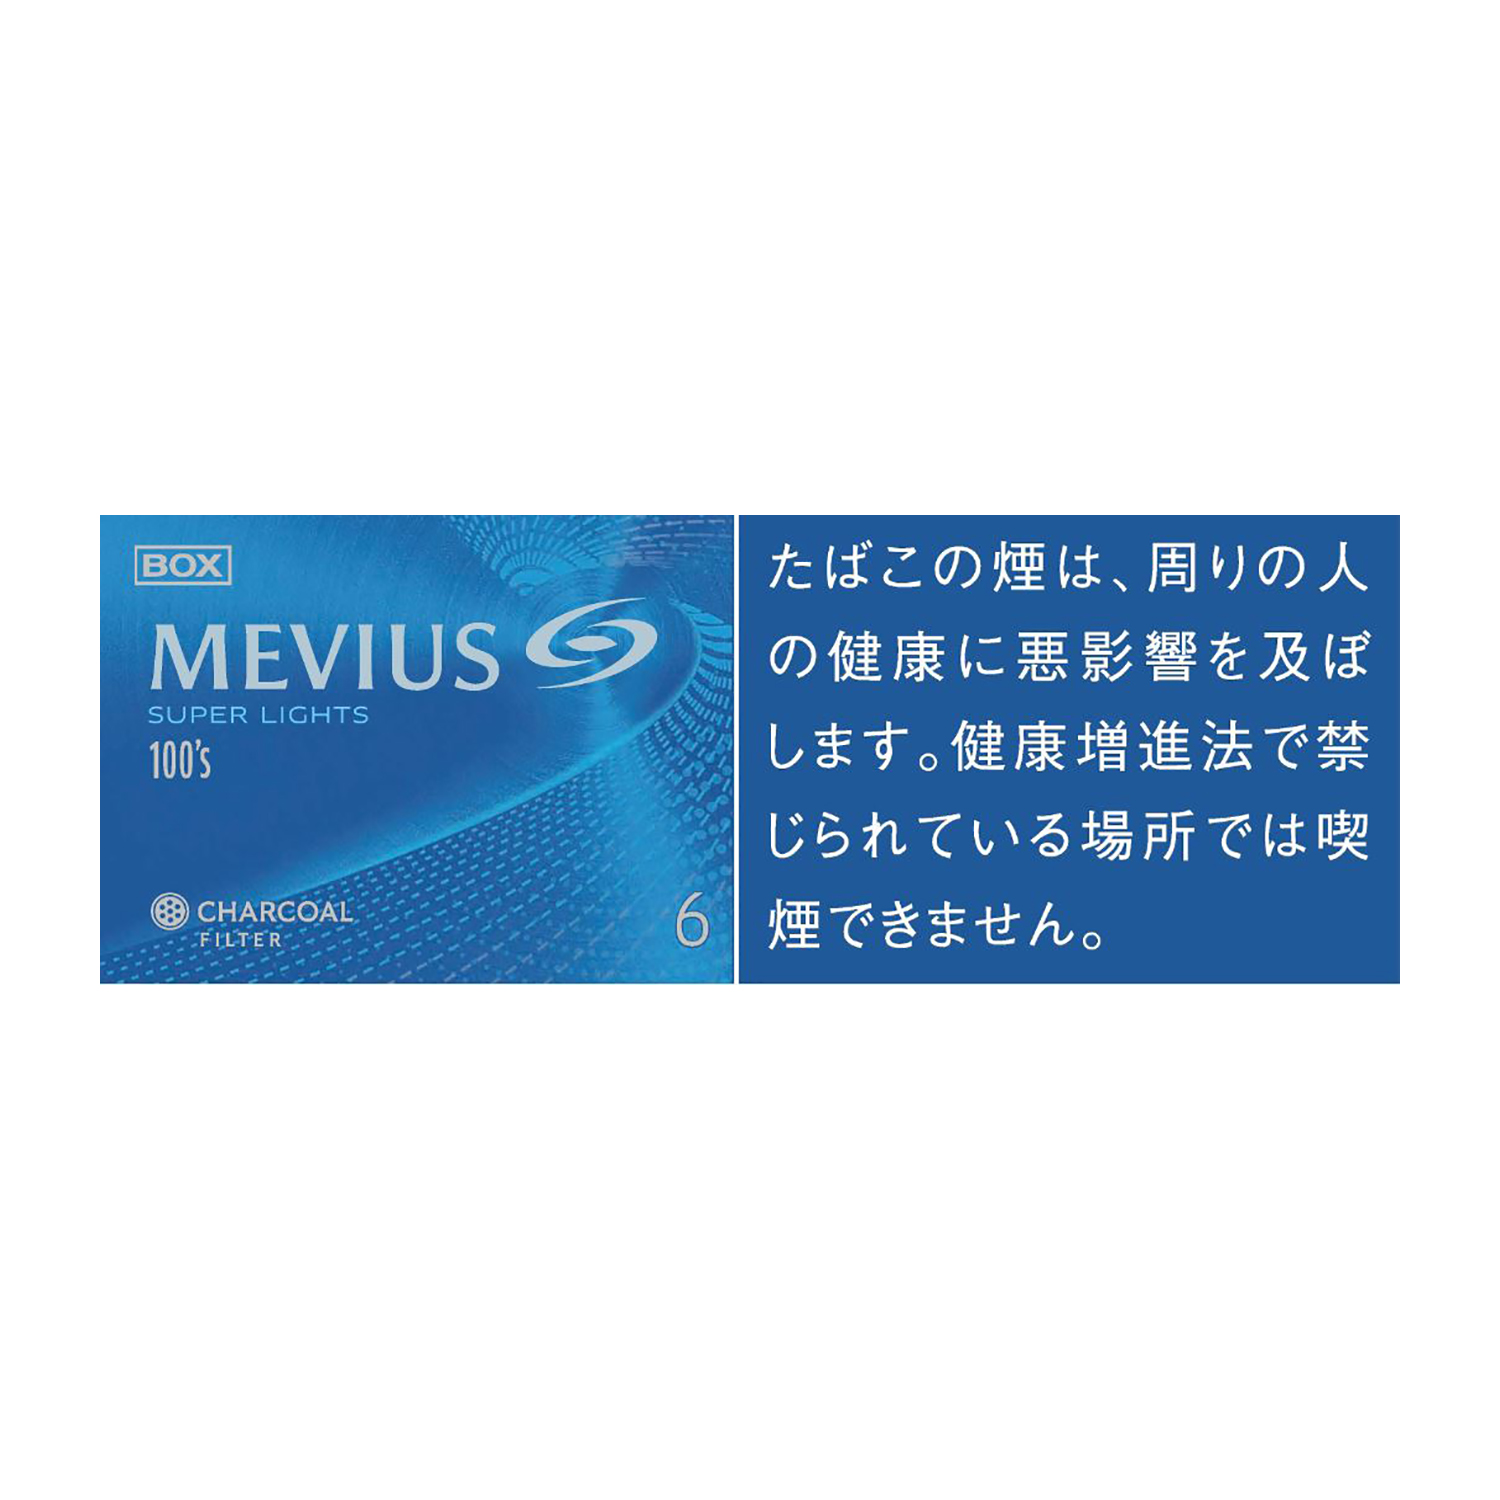 メビウス スーパーライト 100's ボックス / タール:6mg  ニコチン:0.5mg